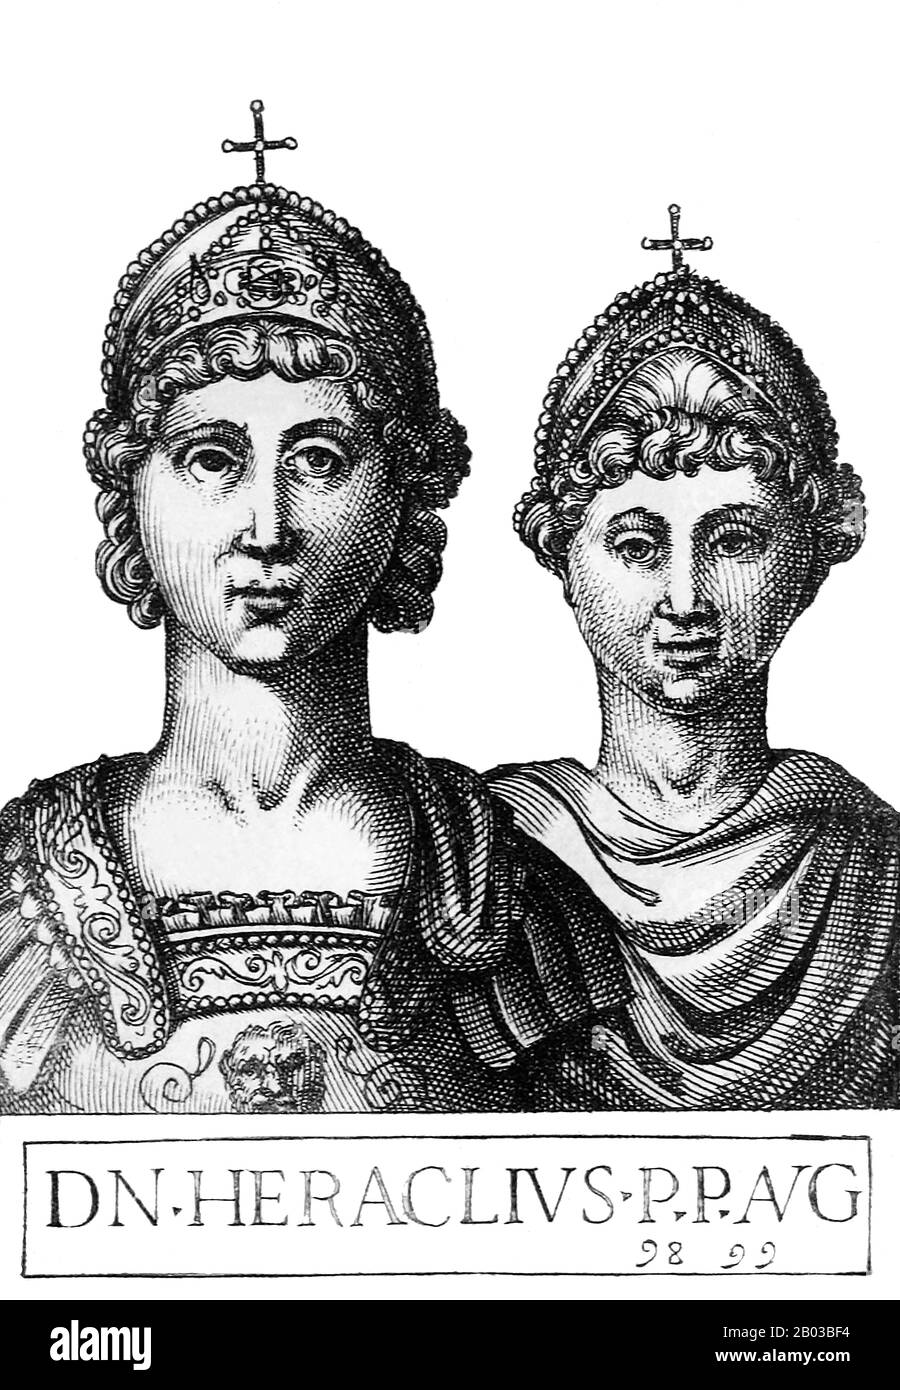 Konstantin III. (612-641), Geburtsname Heraclius Novus Constantinus, war der älteste Sohn des Kaiser Heraclius von dessen erster Frau Eudokia. 613 wurde er zum Mitkaiser ernannt. Konstantin wurde 641 nach dem Tod seines Vaters Oberkaiser und regierte neben seinem jüngeren Halbbrüder Heraklonas (626-641), Sohn von Heraclius' zweiter Frau Martina. Heraklonas regierte offiziell unter dem Namen Flavius Constantinus Heraclius. Stockfoto